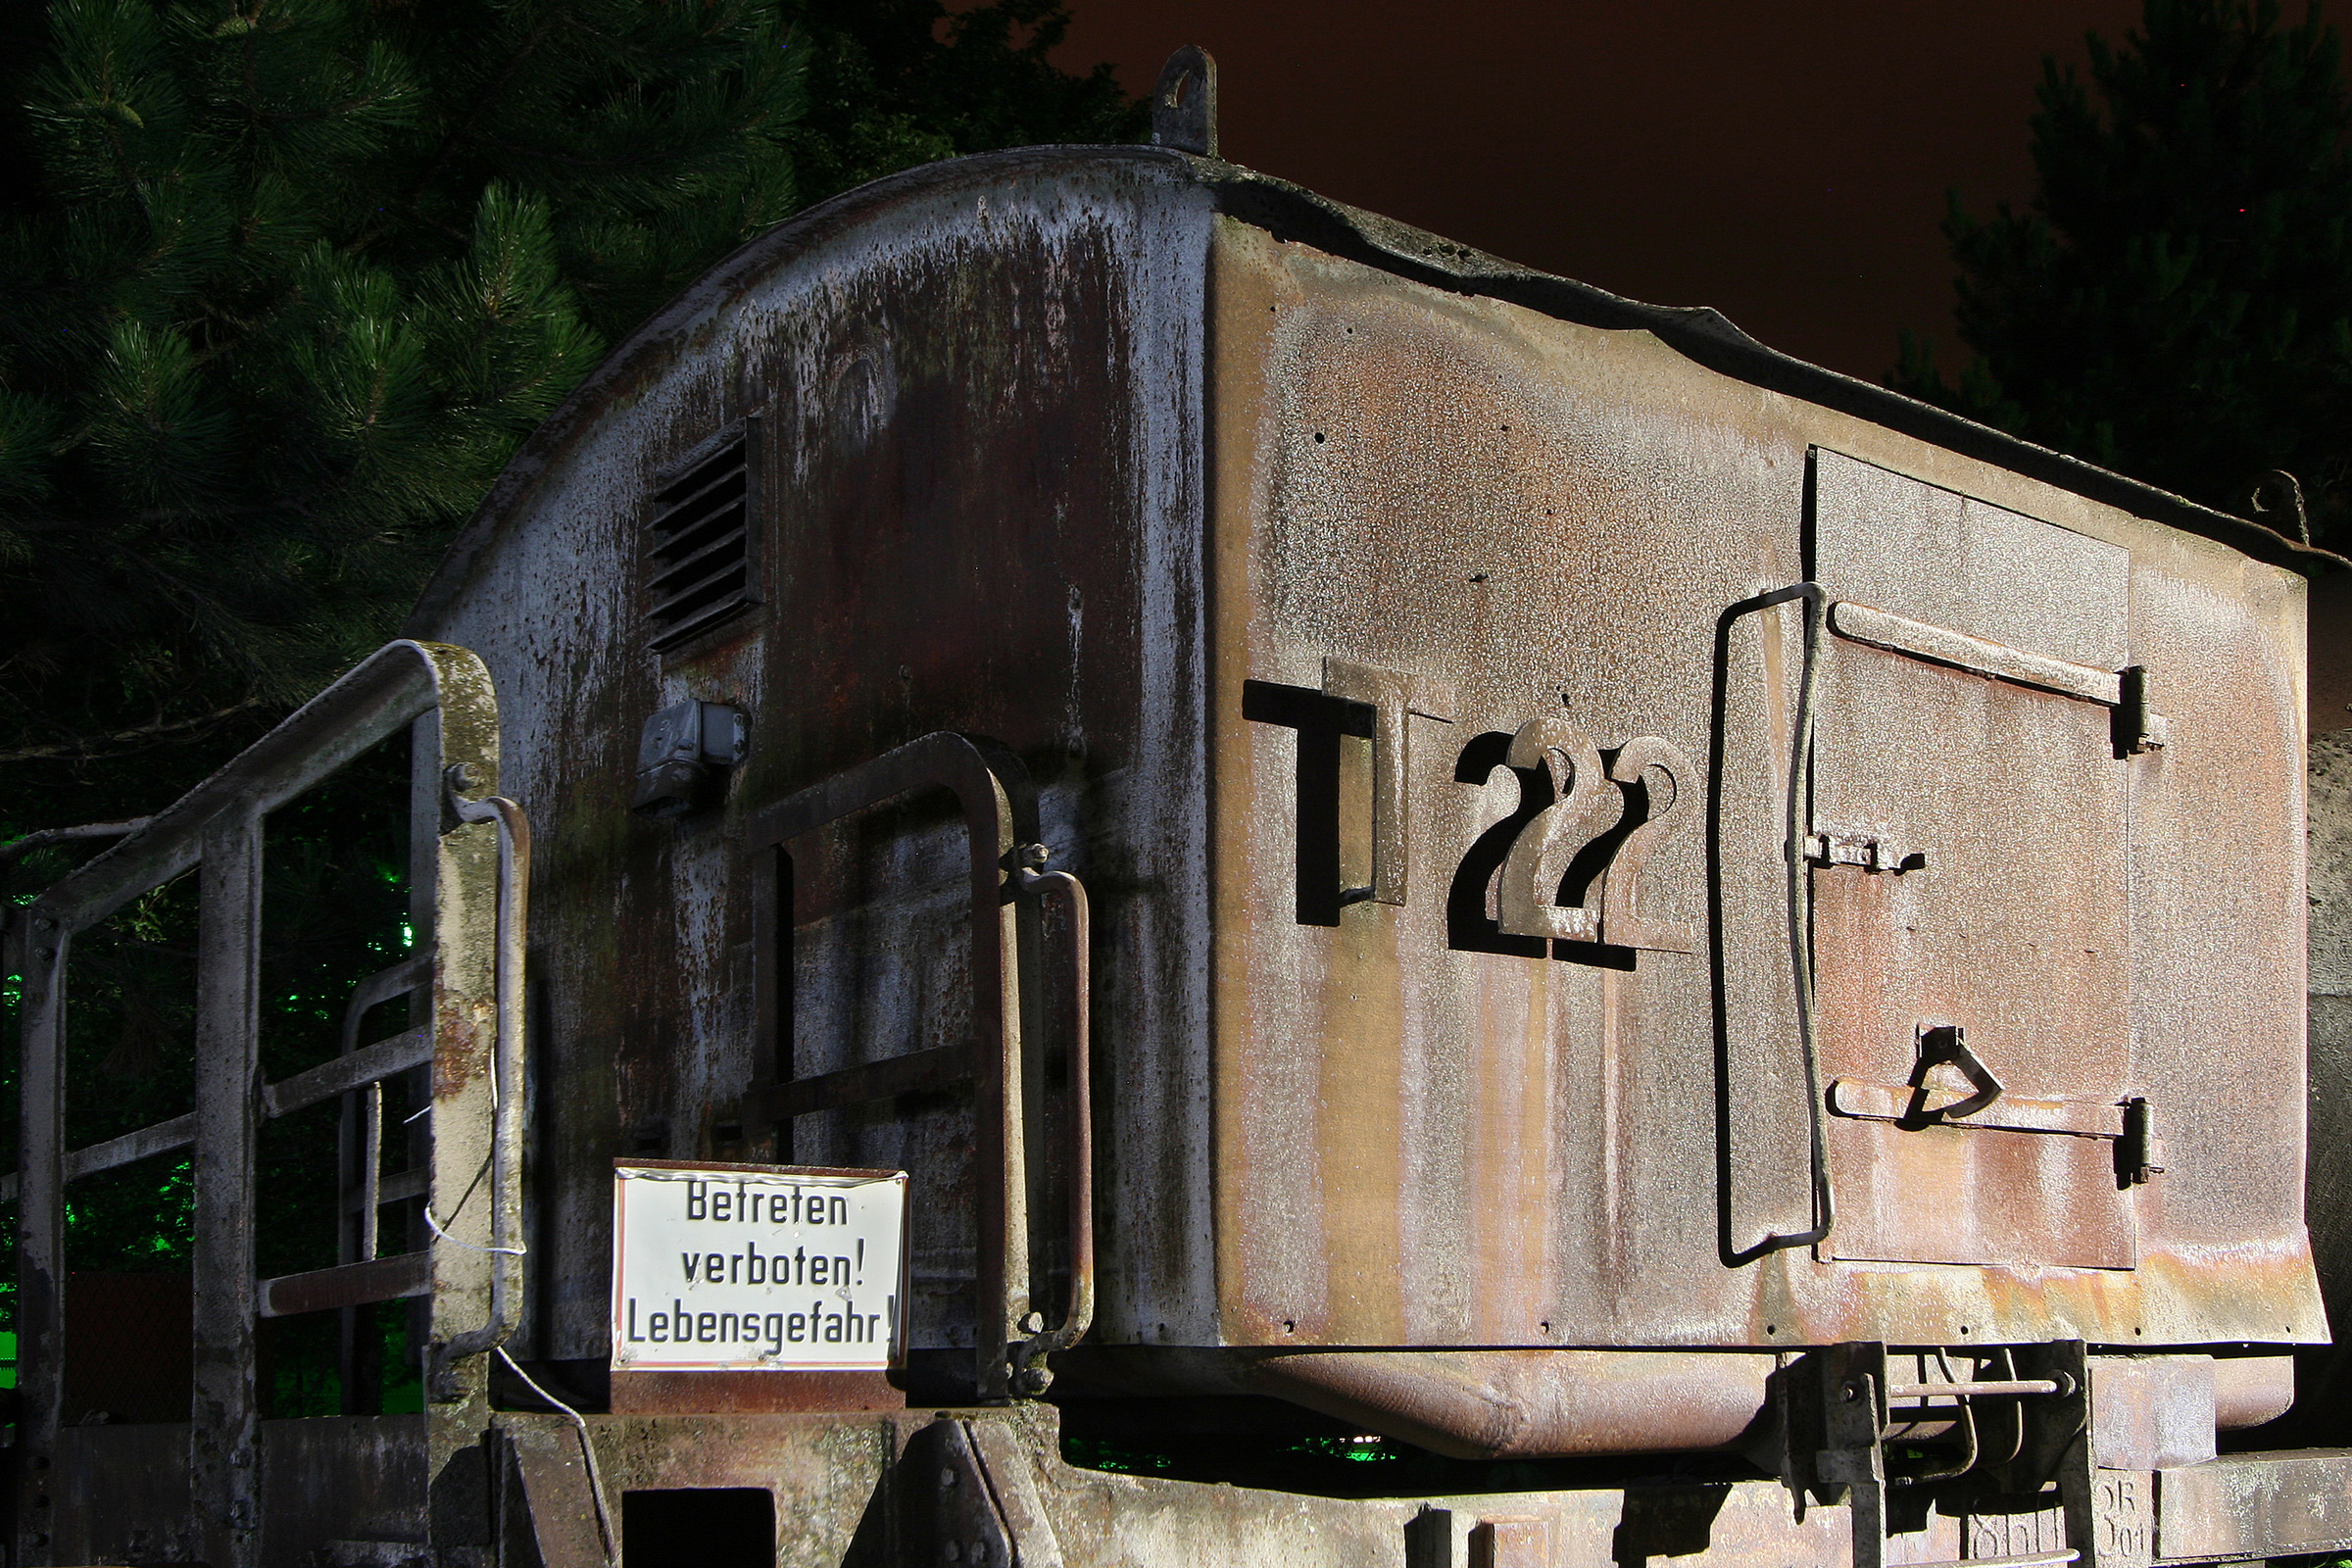 T22 – Torpedowagen III